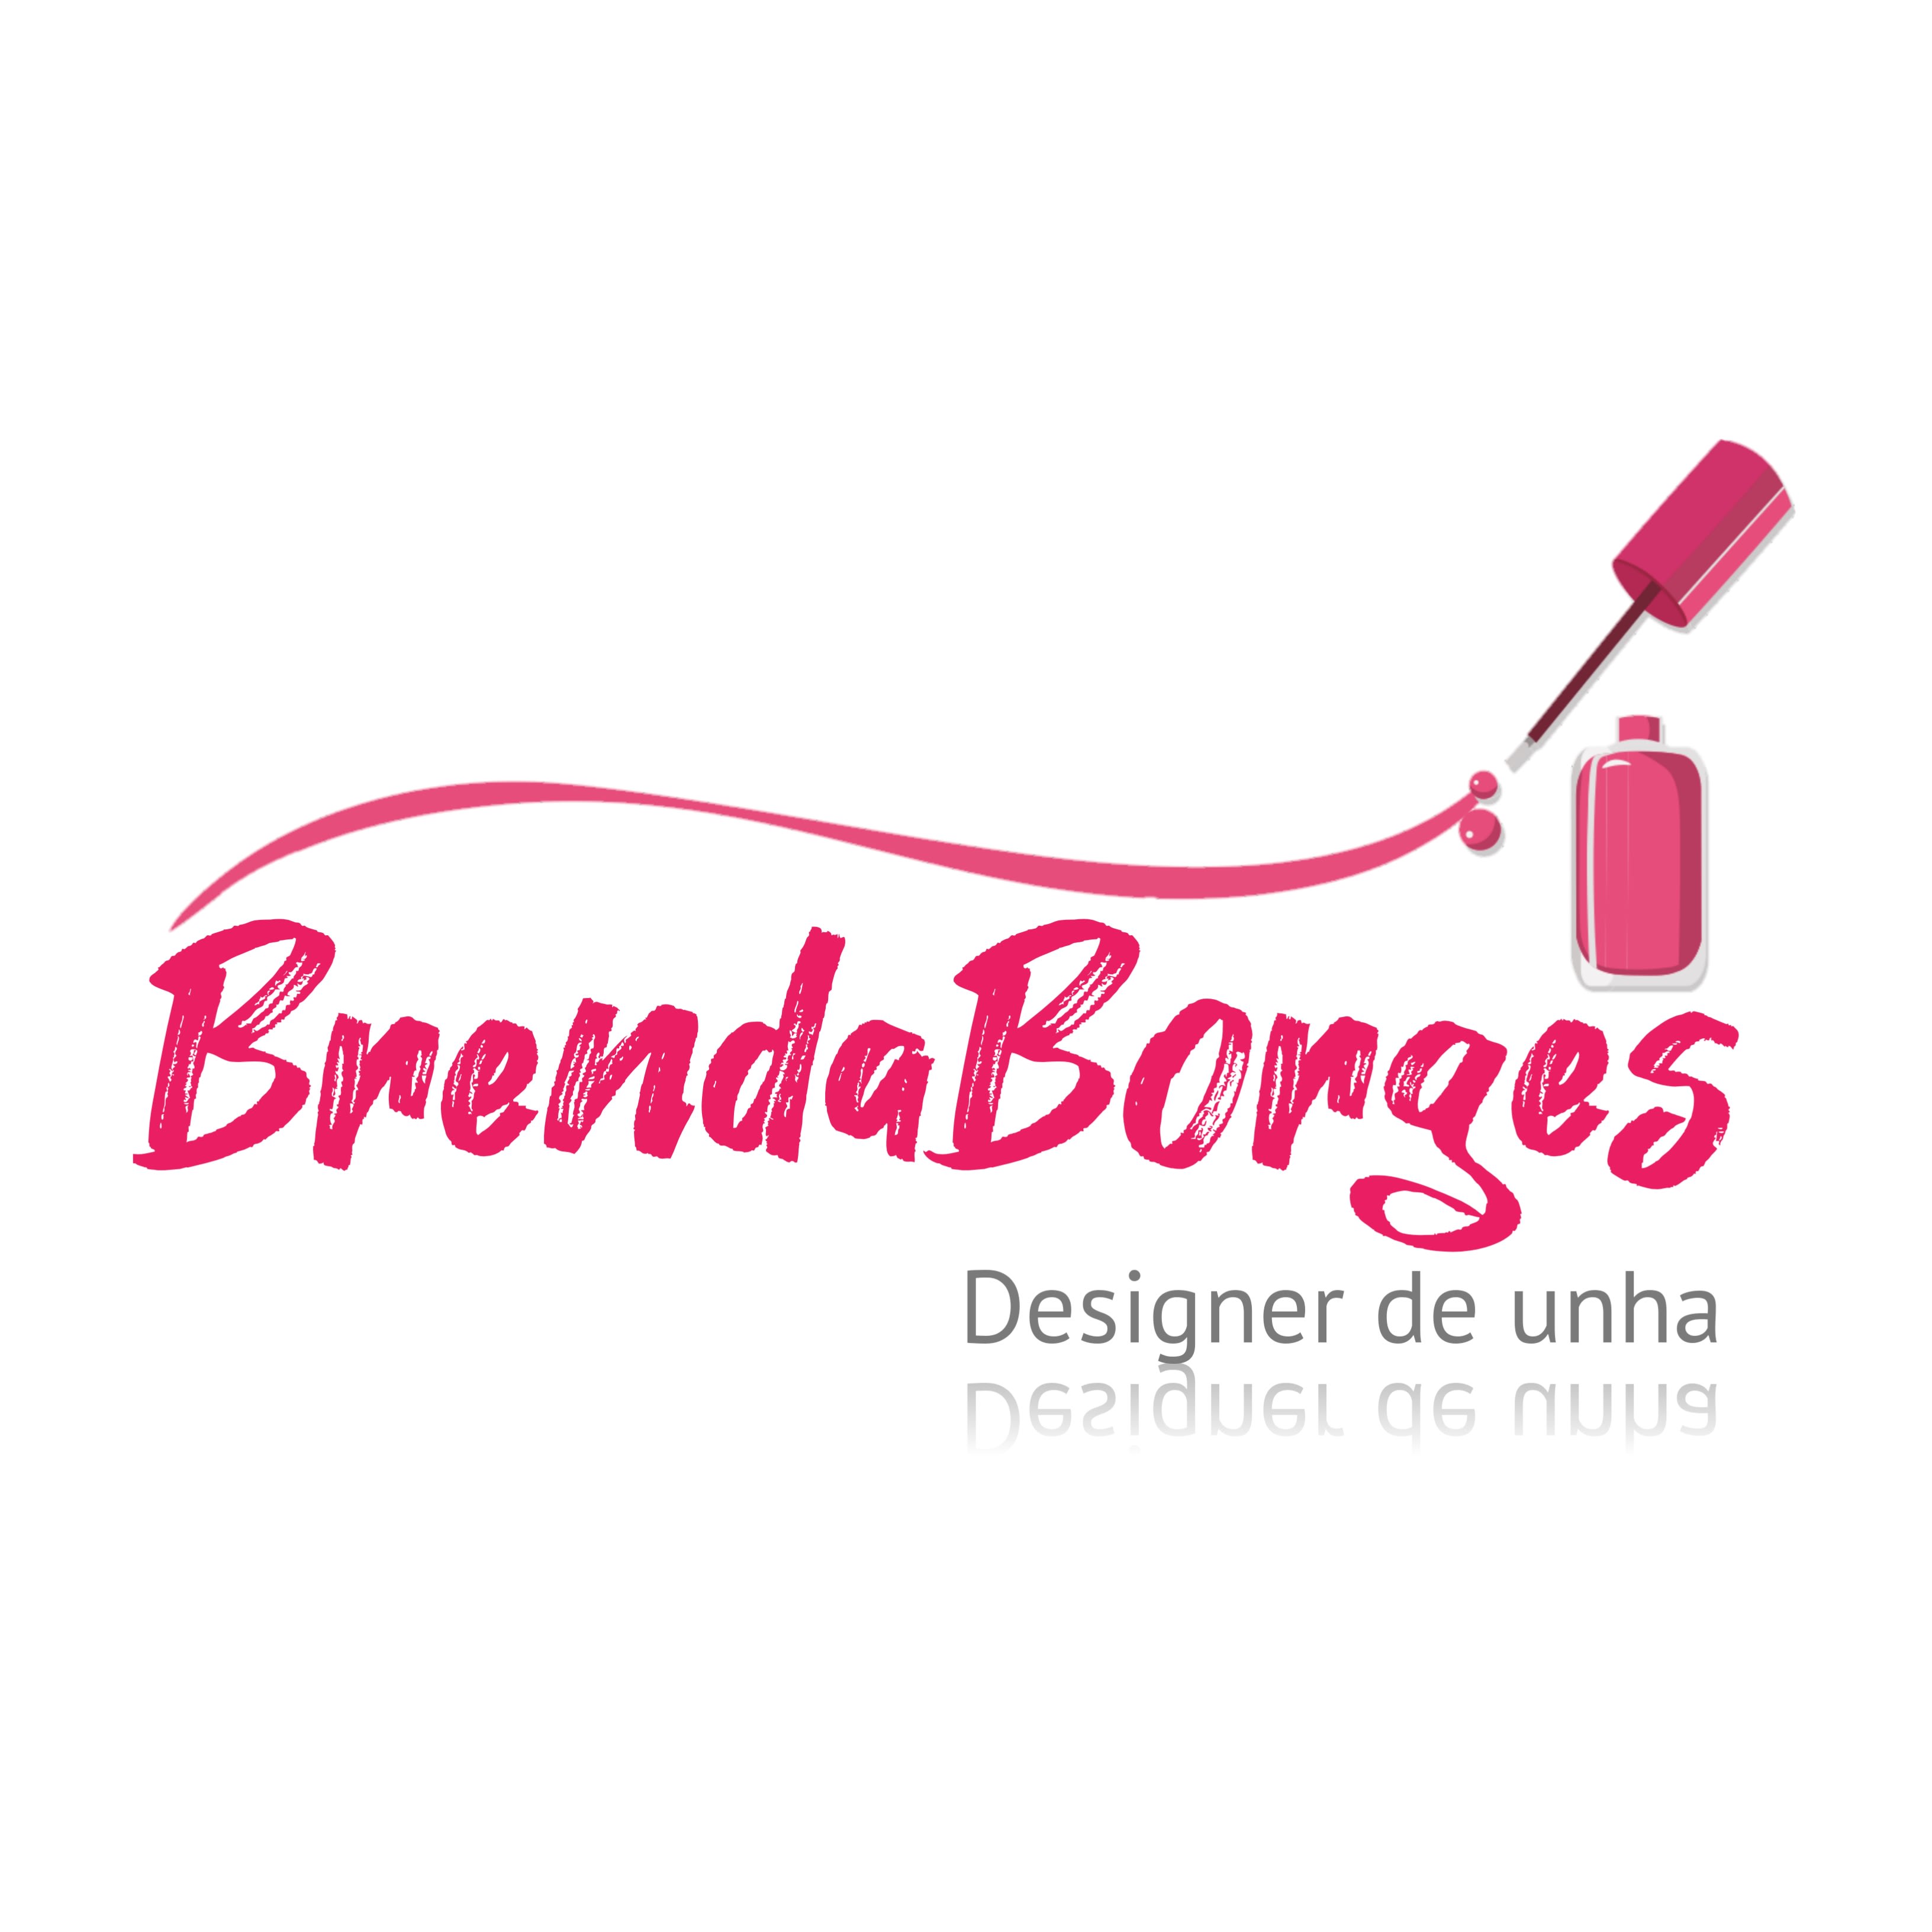 Brenda Borges Nails Designer